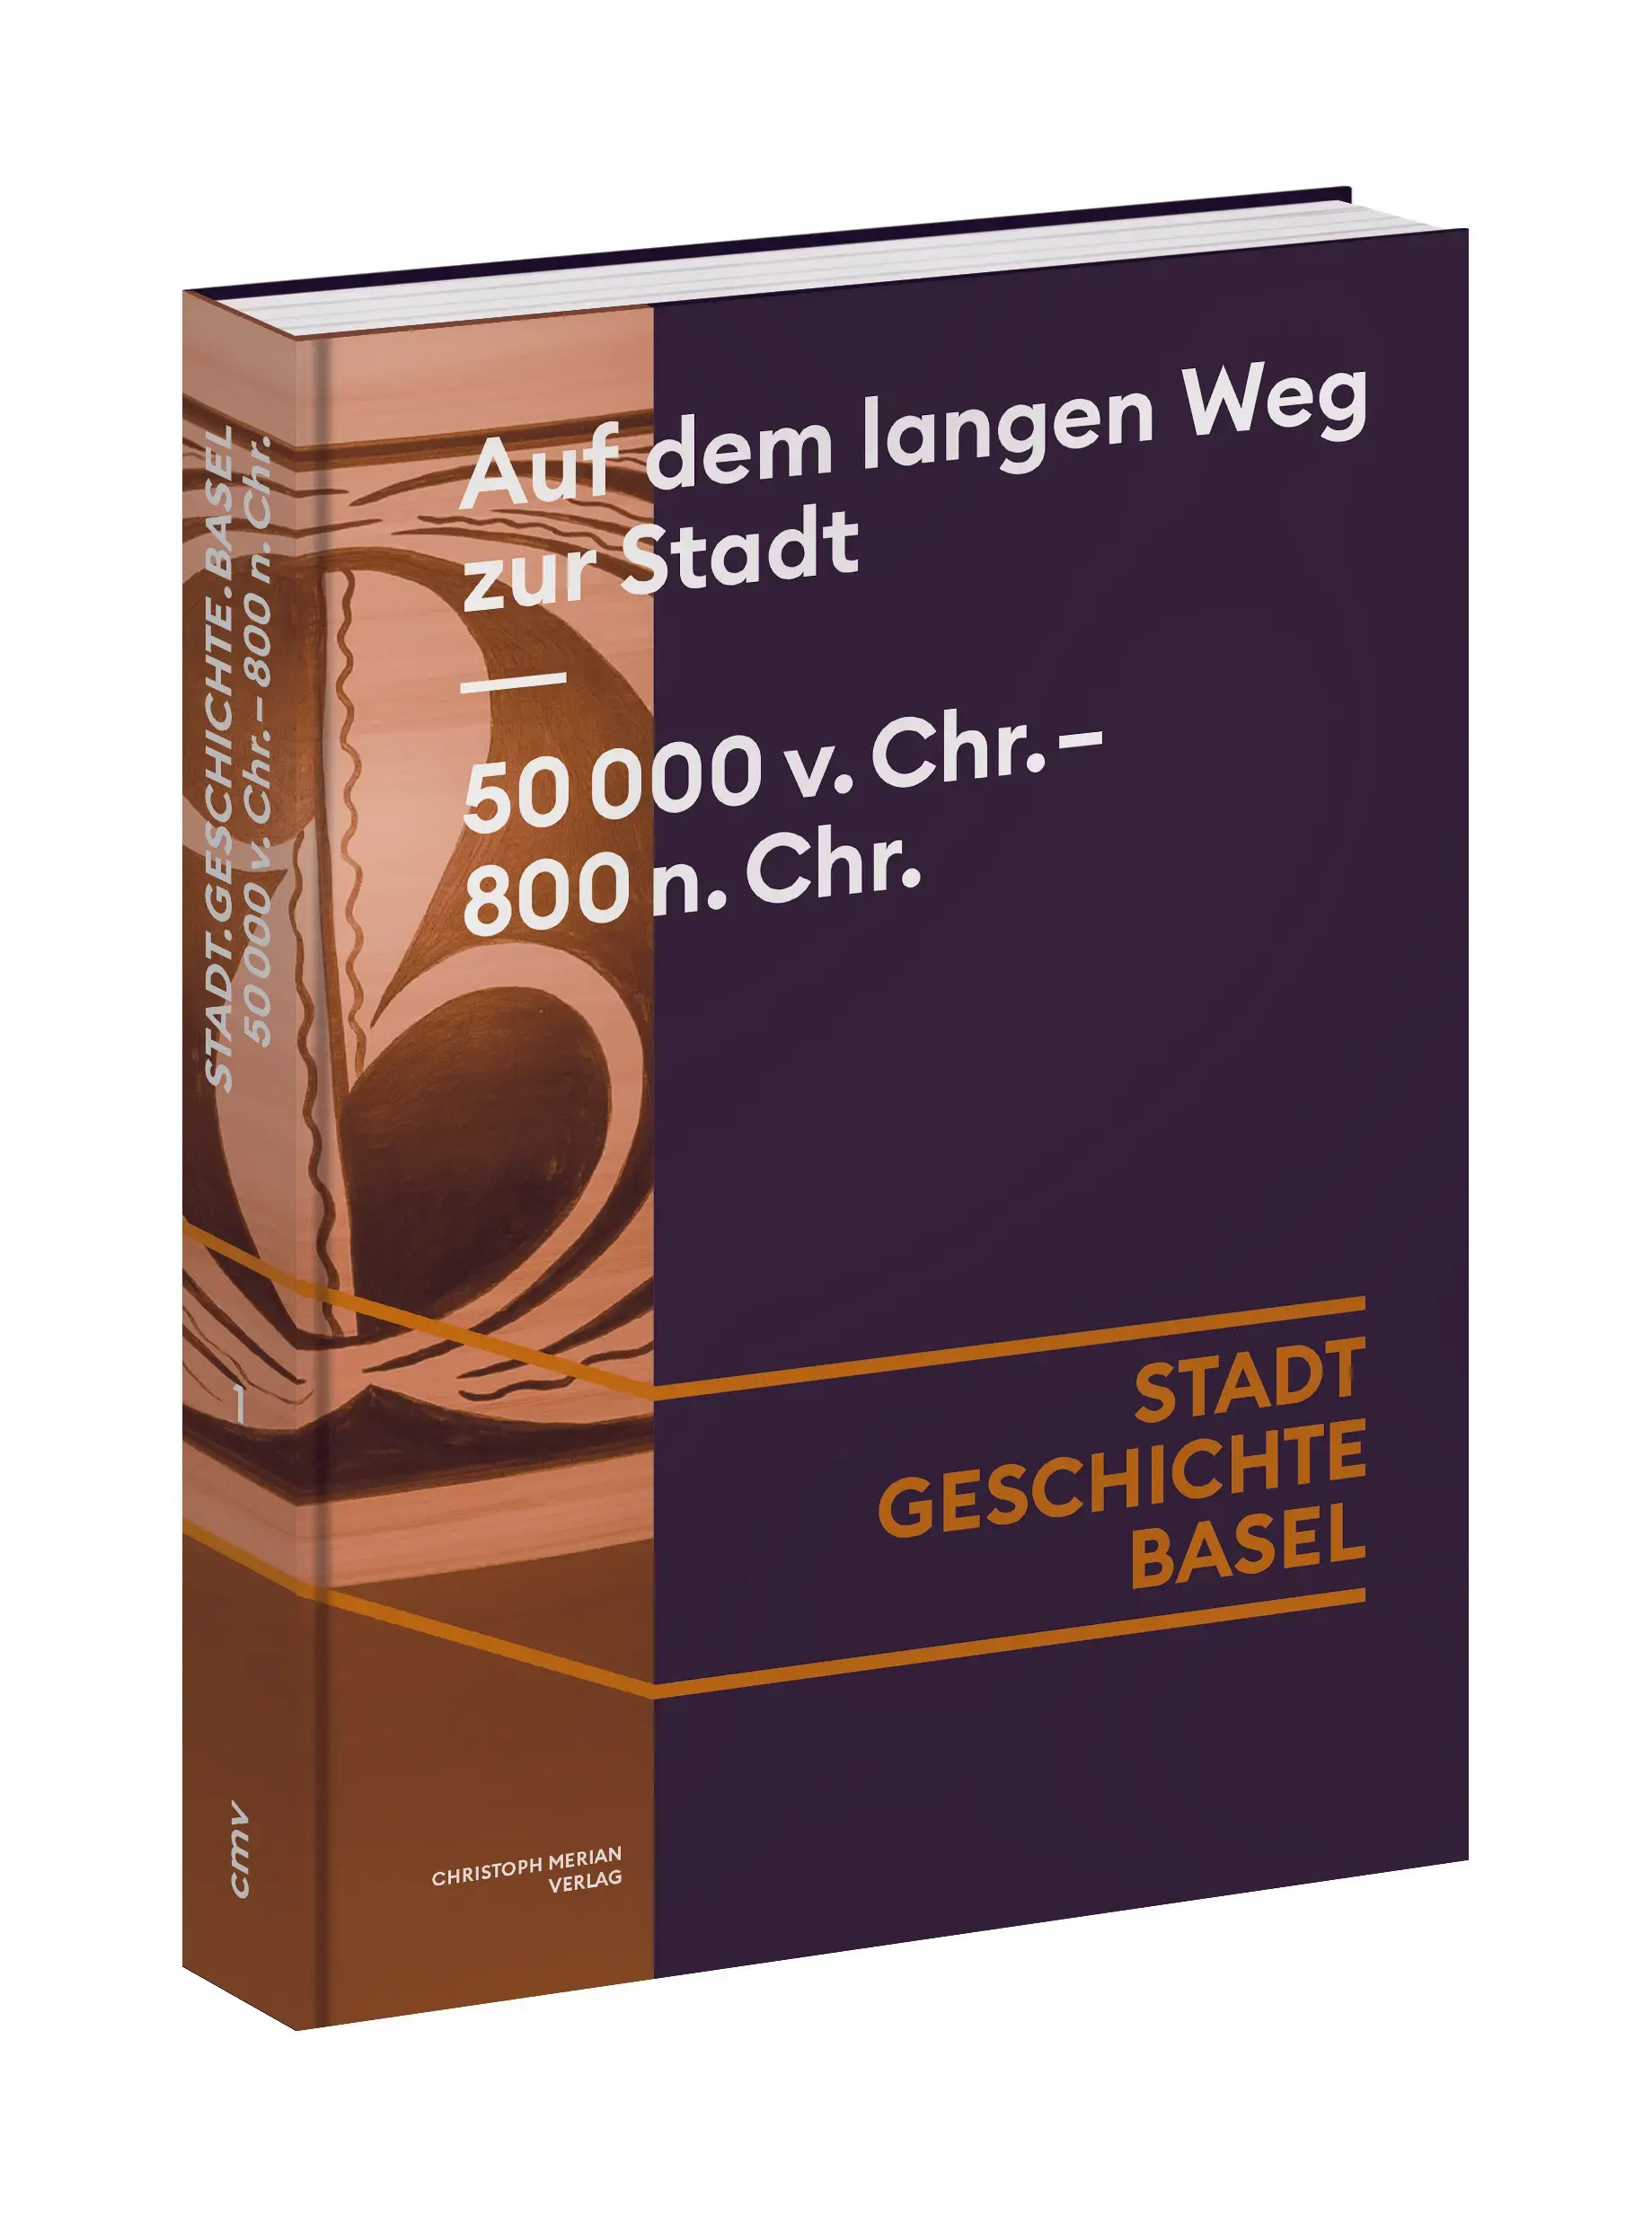 Cover von Band 1 der neuen Basler Stadtgeschichte. Der Band heisst "Auf dem langen Weg zur Stadt. Basel 50'000 v. Chr. bis 800 n. Chr." Das Cover zeigt ein keltisches Gefäss.